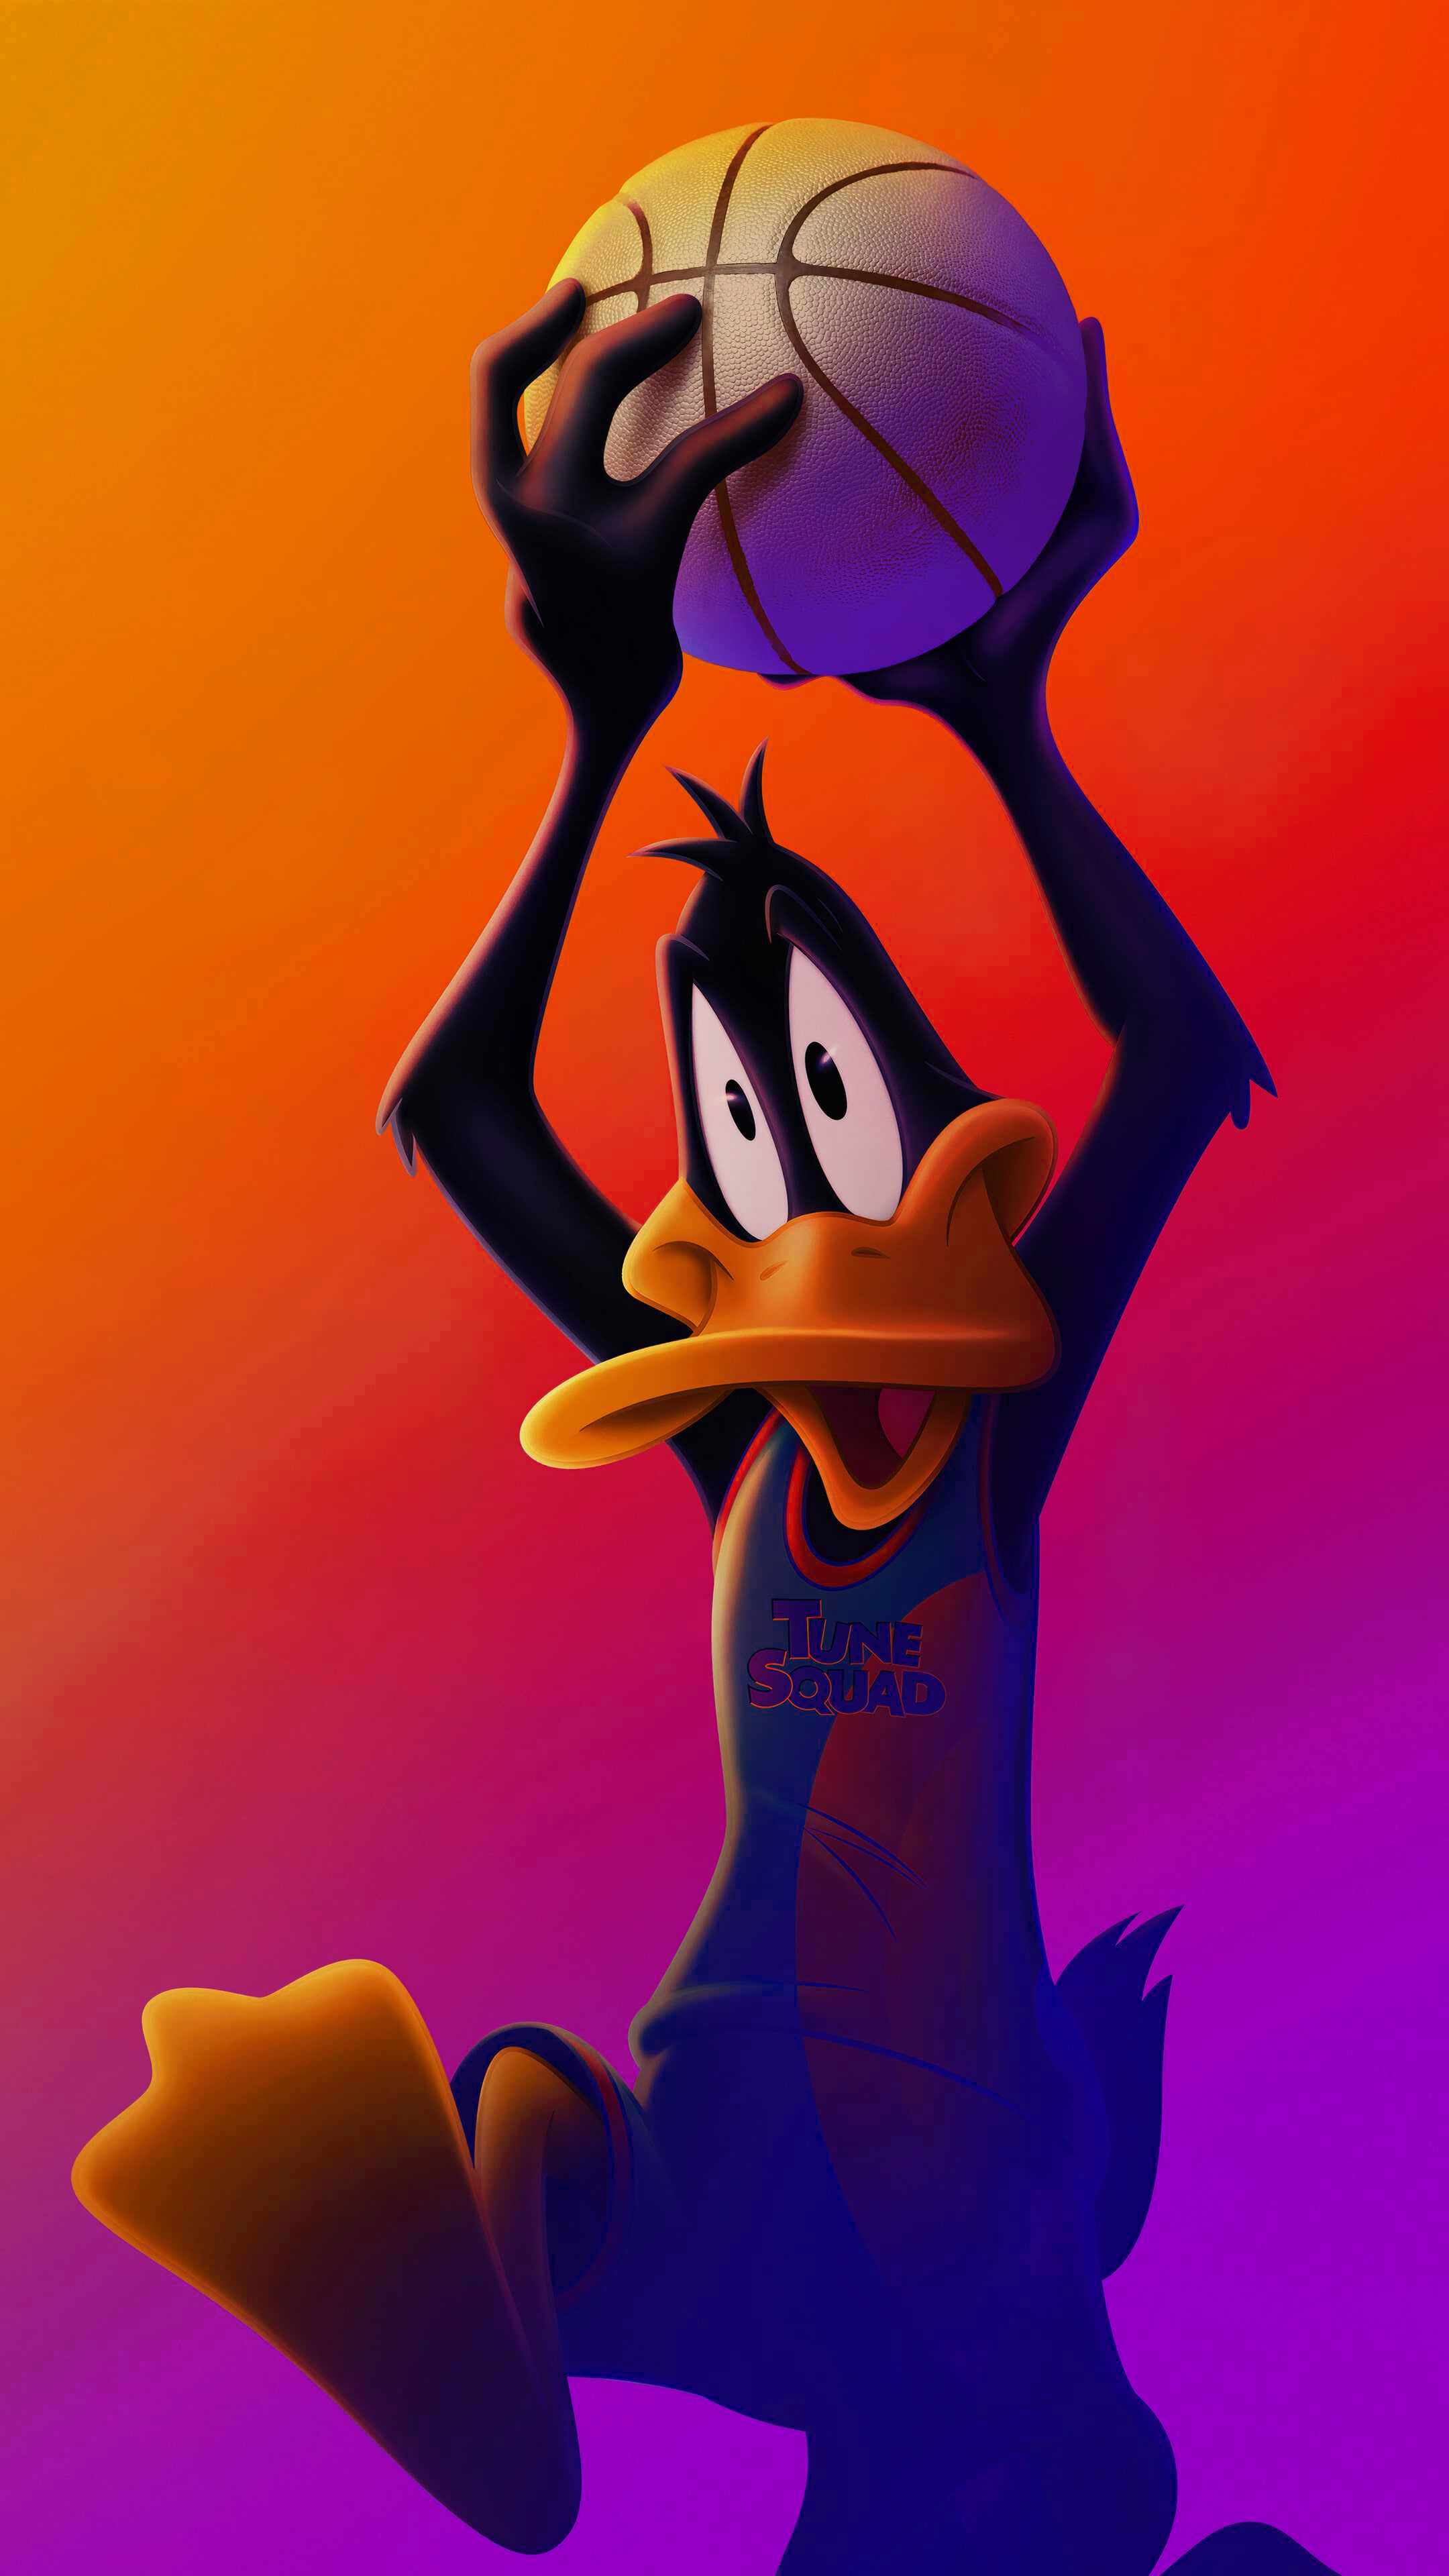 Daffy Duck Background 1